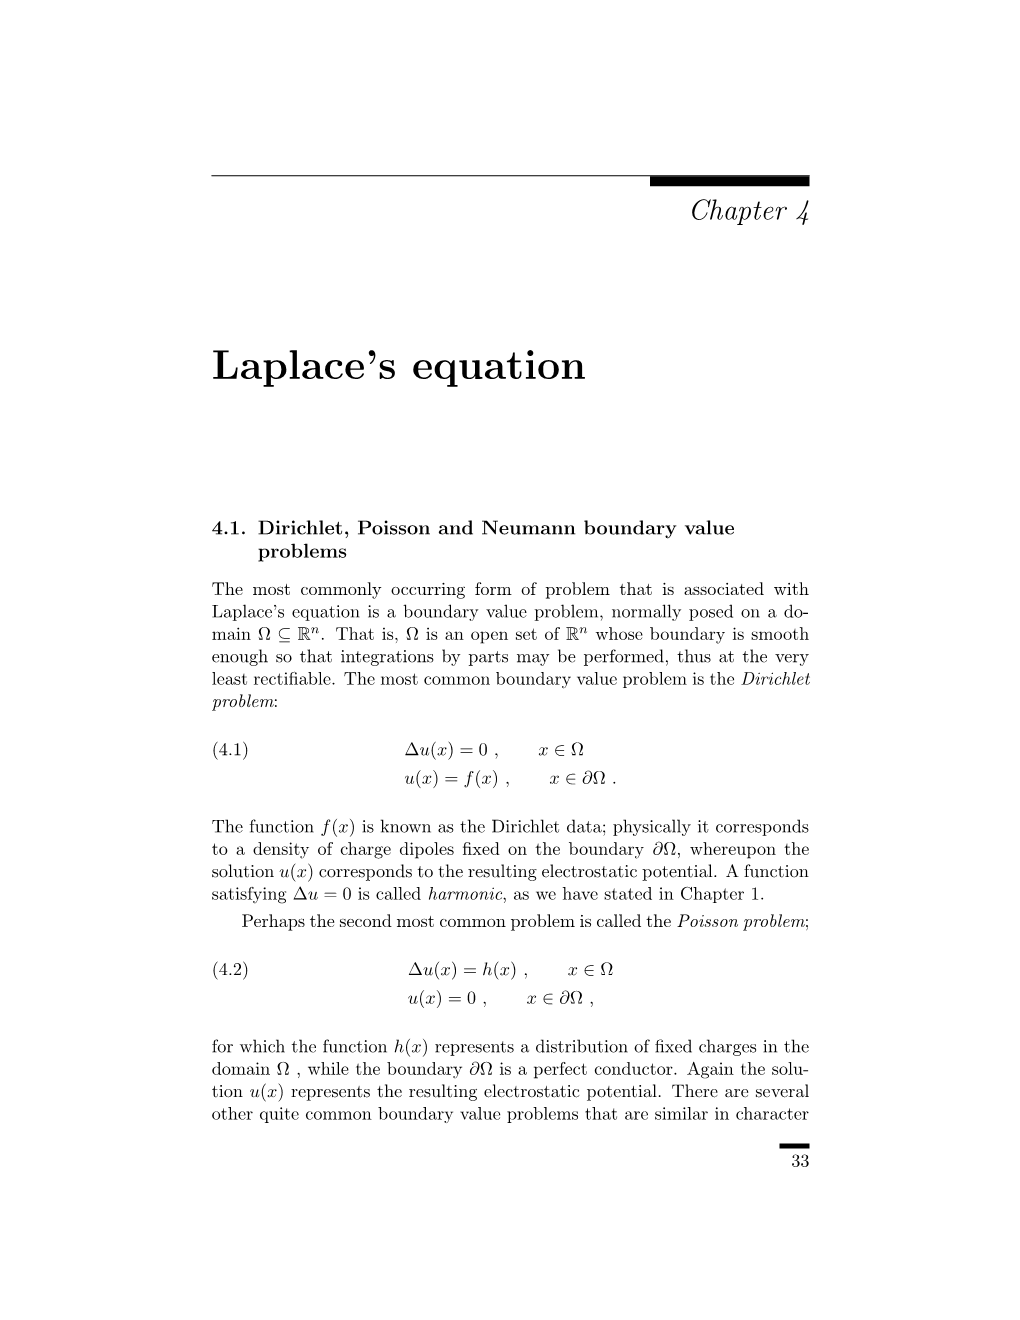 Laplace's Equation